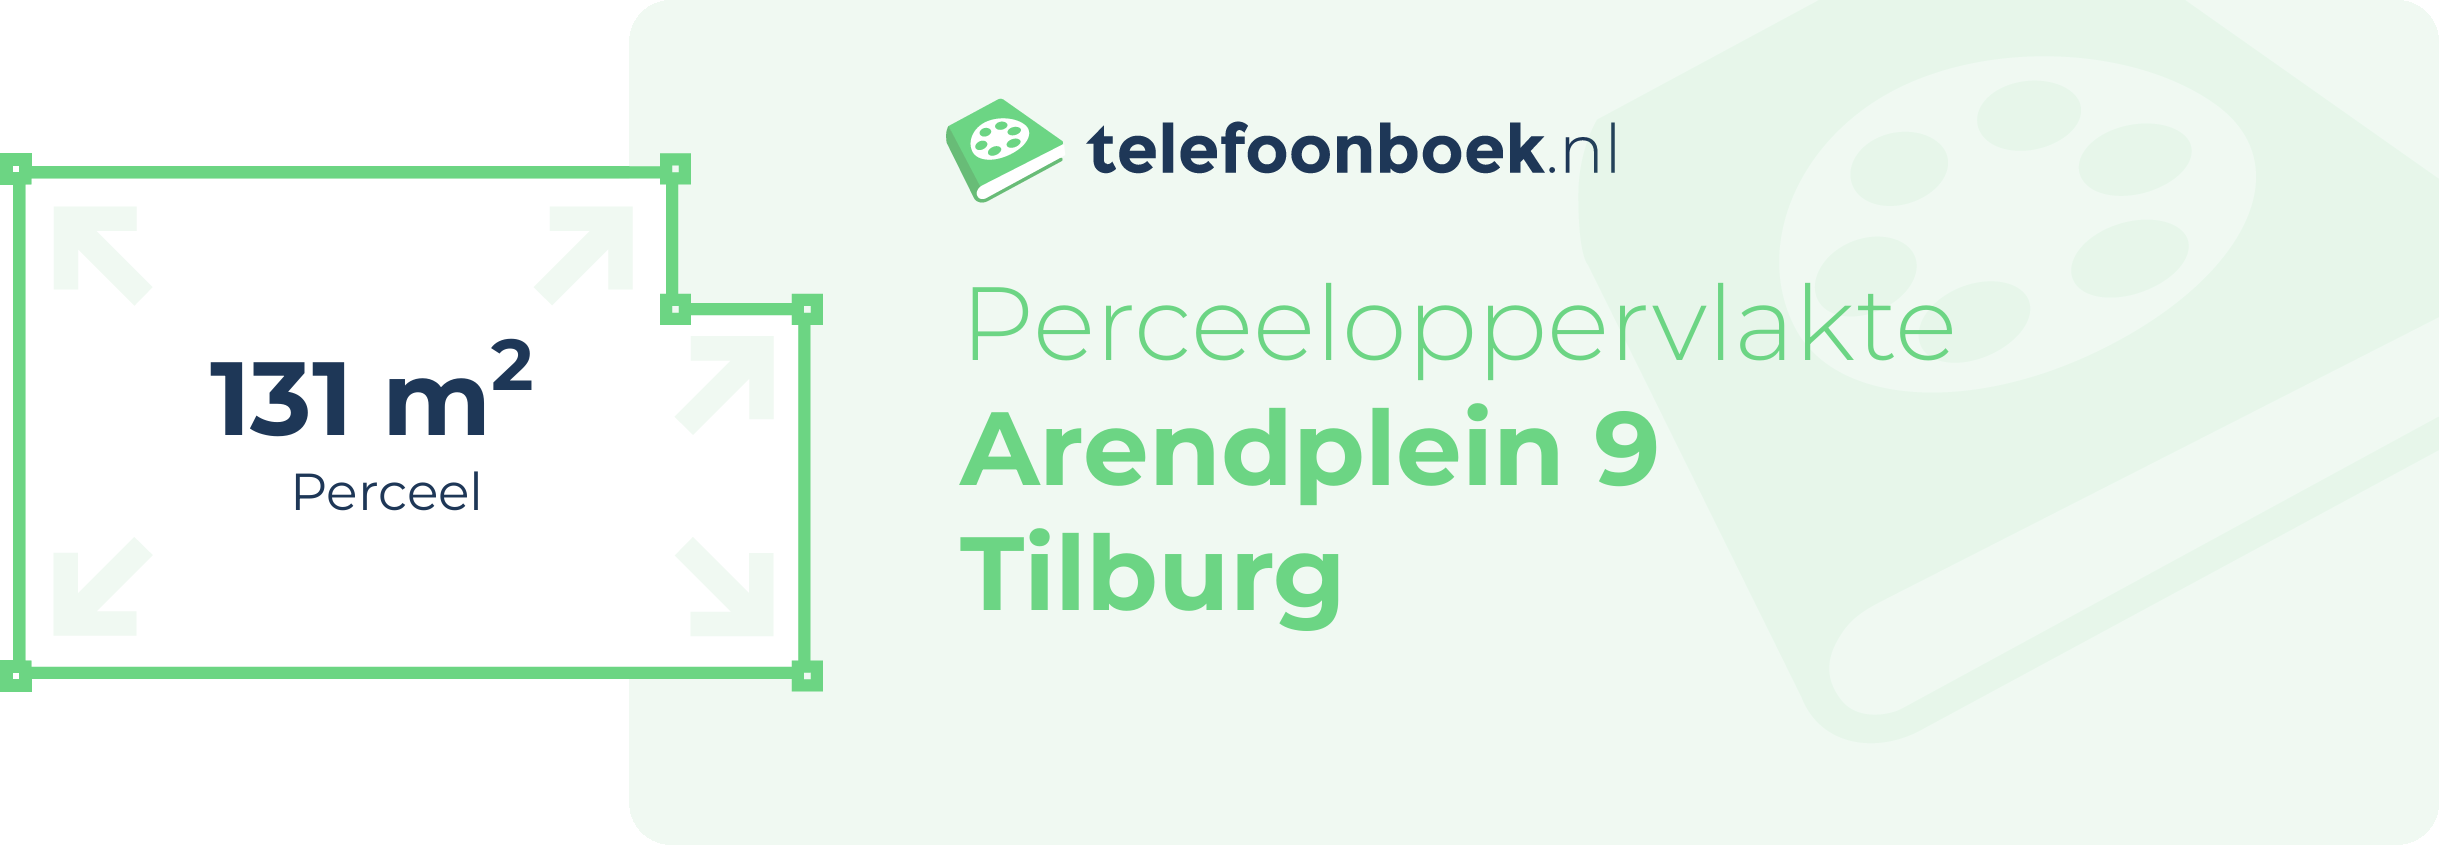 Perceeloppervlakte Arendplein 9 Tilburg